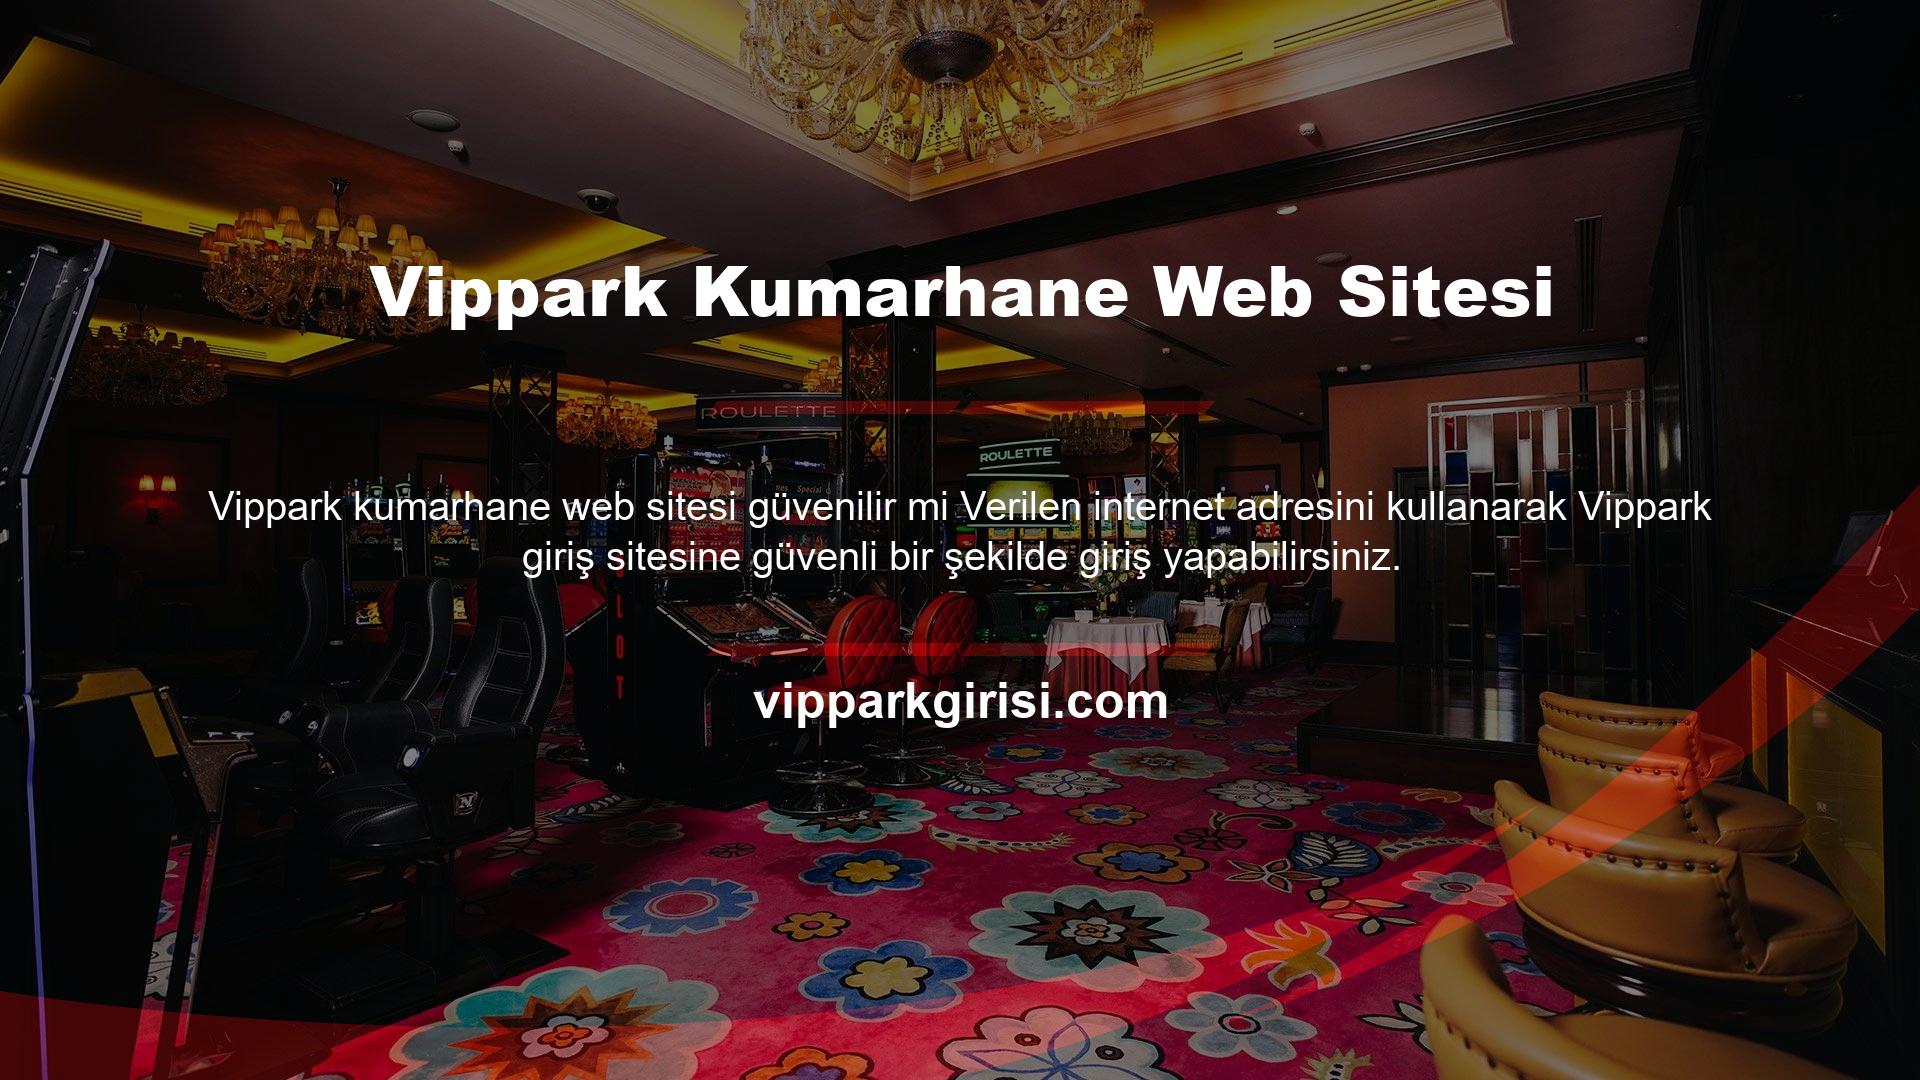 Vippark Türkiye web sitesi bu güncellemeleri anında sağlamakta ve kullanıcılara kesintisiz hizmet sunmaktadır